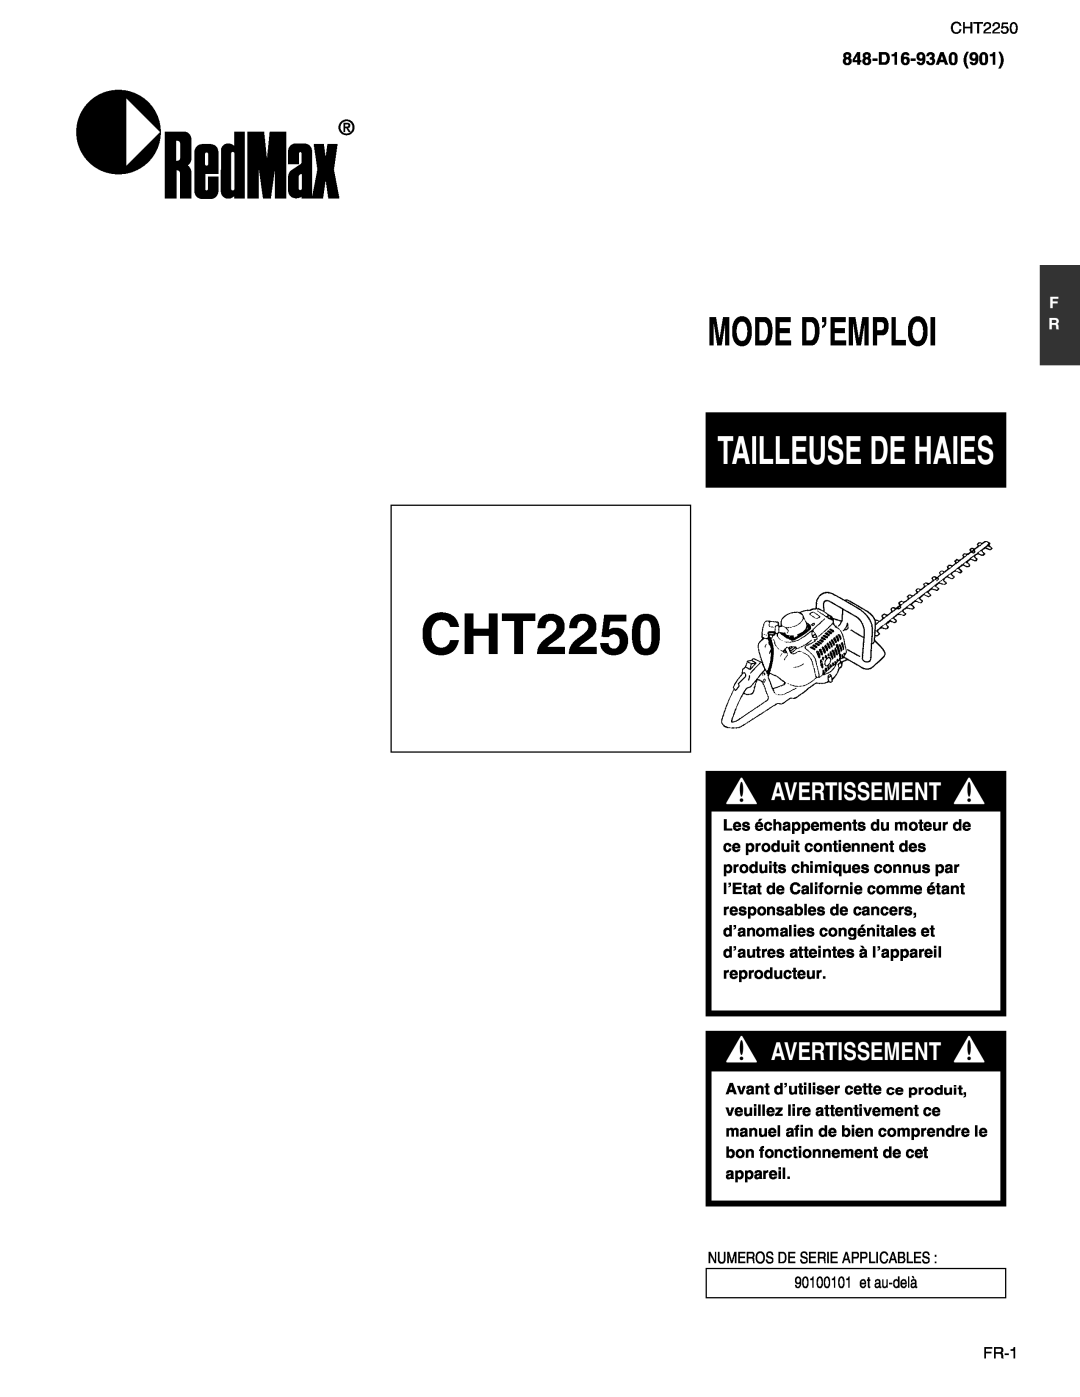 RedMax CHT2250 manual Mode D’Emploi, Tailleuse De Haies, Avertissement, 848-D16-93A0 